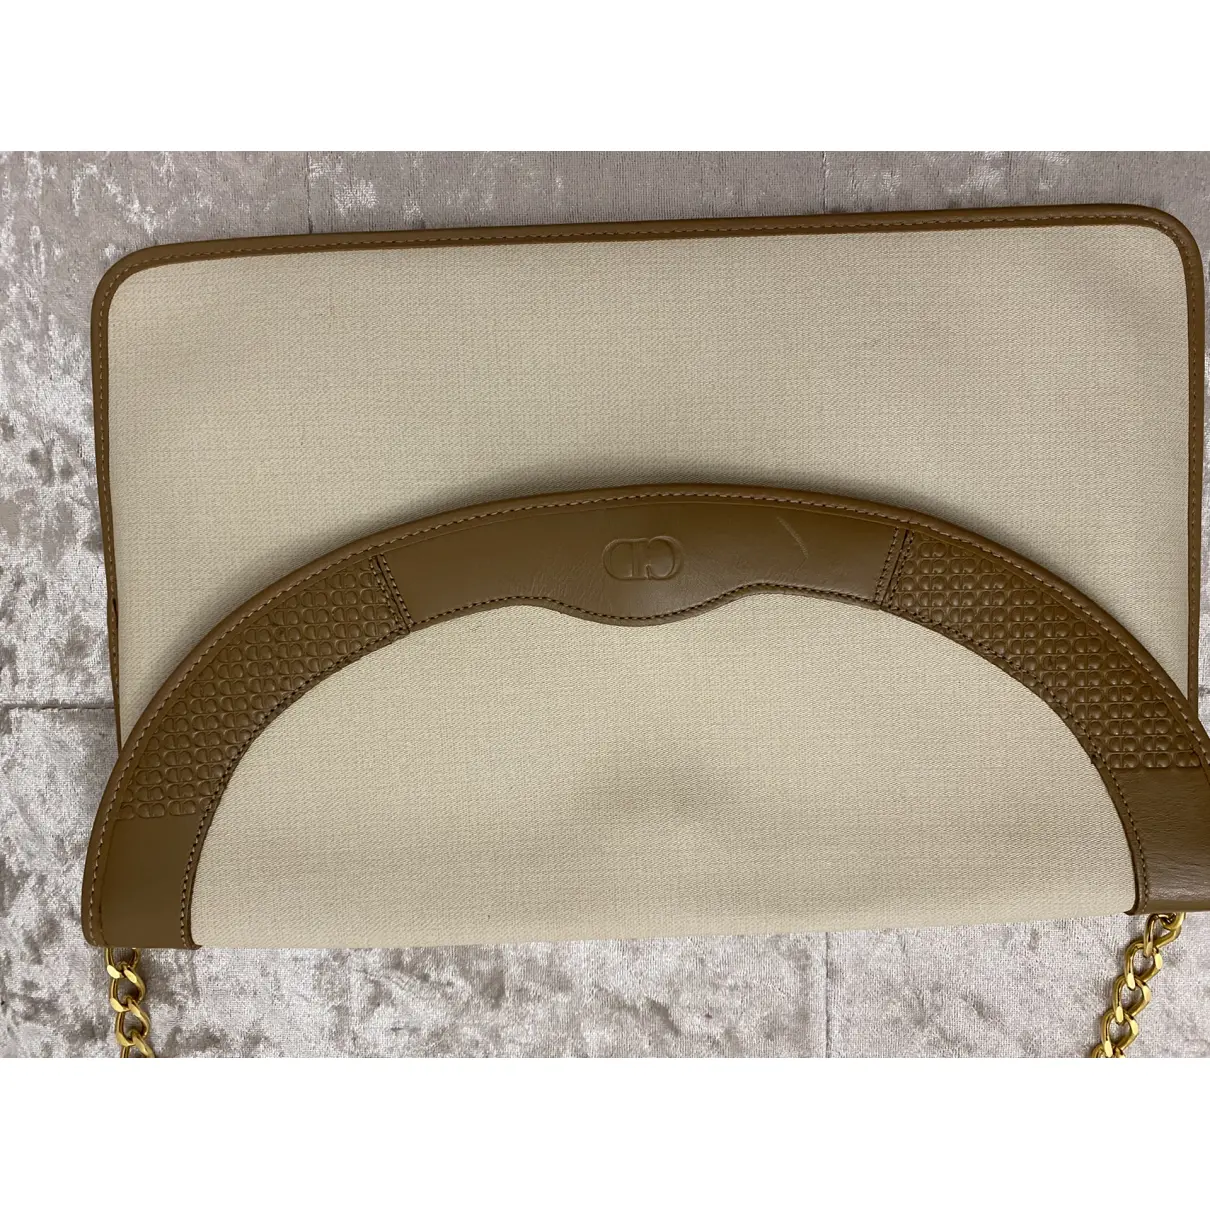 Buy Dior Handbag online - Vintage